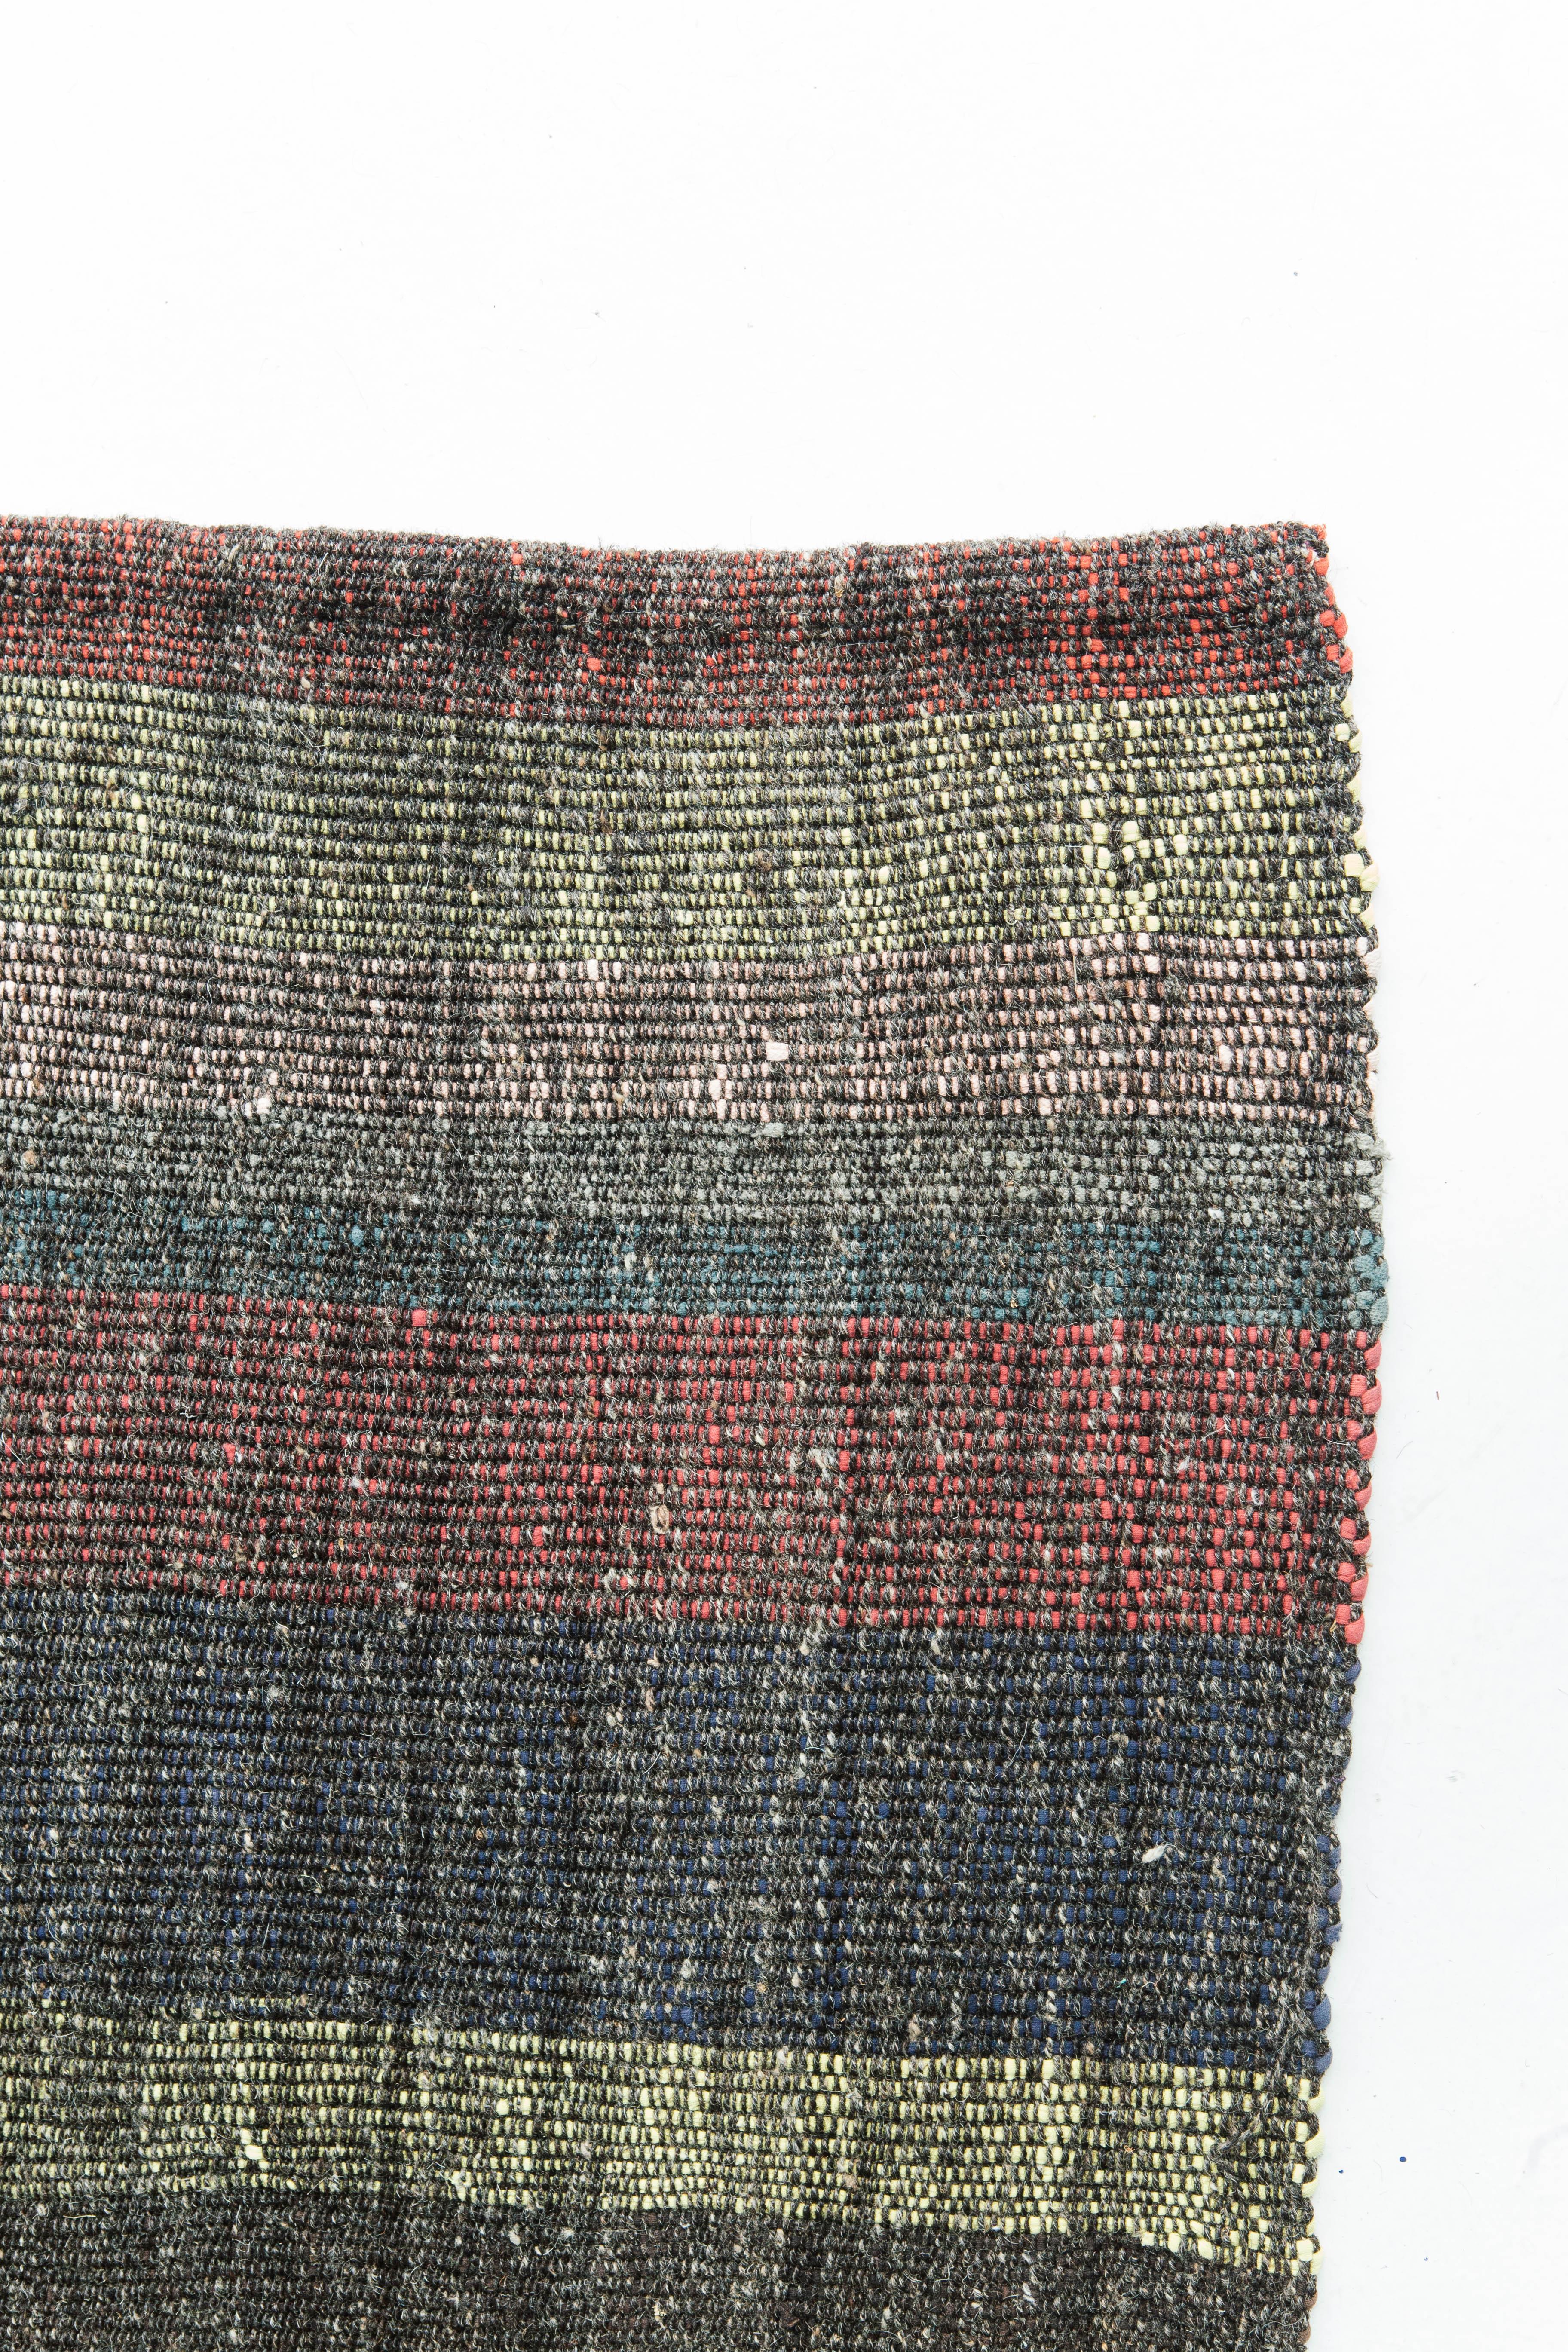 Ce Kilim Tisse turc tisse des couleurs magnifiques pour créer un motif écossais abstrait. Les différentes couleurs créent un aspect chaleureux et cohérent dans une texture intéressante. Ce tissage plat serait un excellent complément pour rehausser